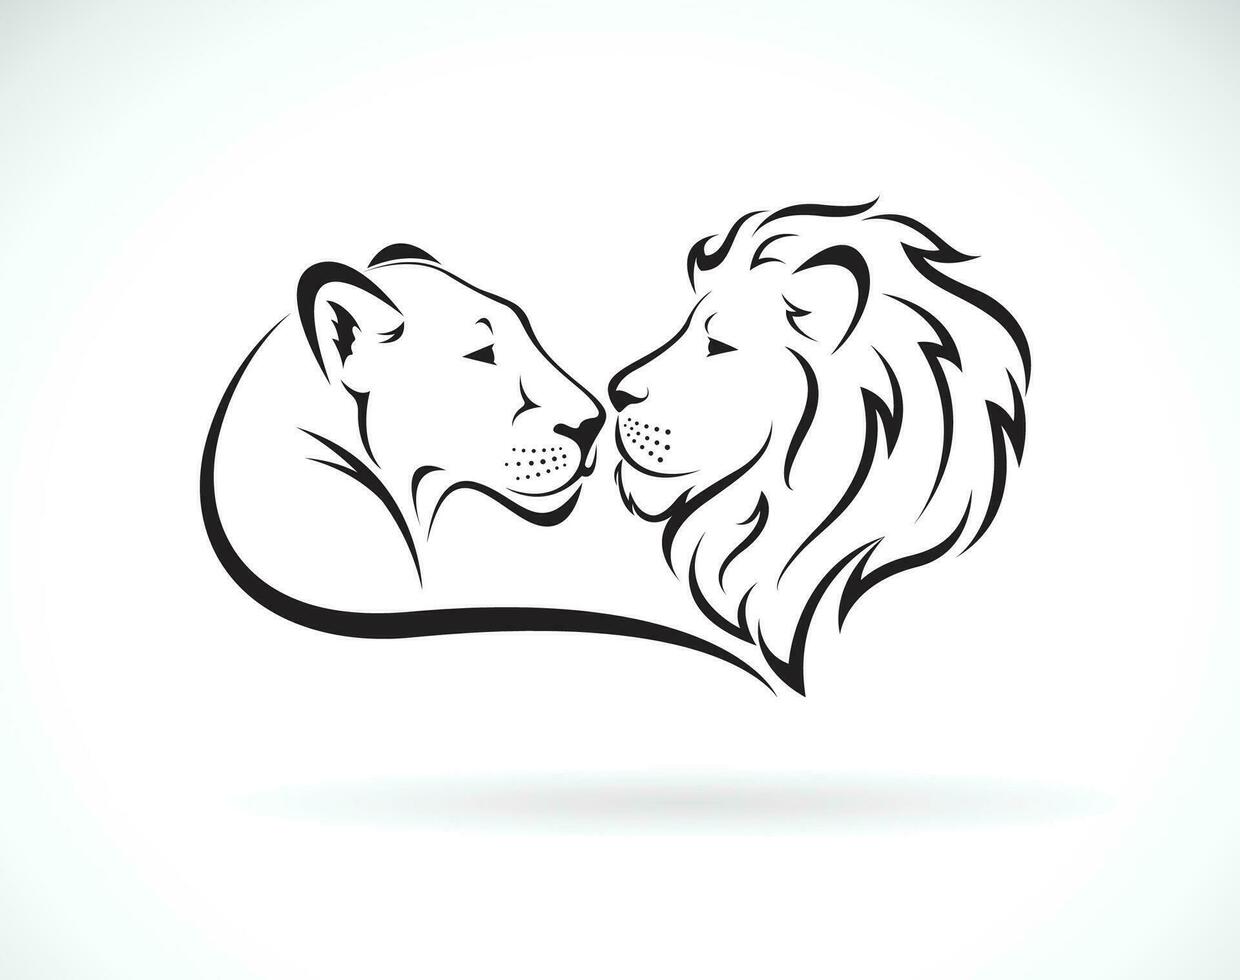 Masculin Lion et femelle Lion conception sur blanc Contexte. sauvage animaux. Lion logo ou icône. facile modifiable en couches vecteur illustration.